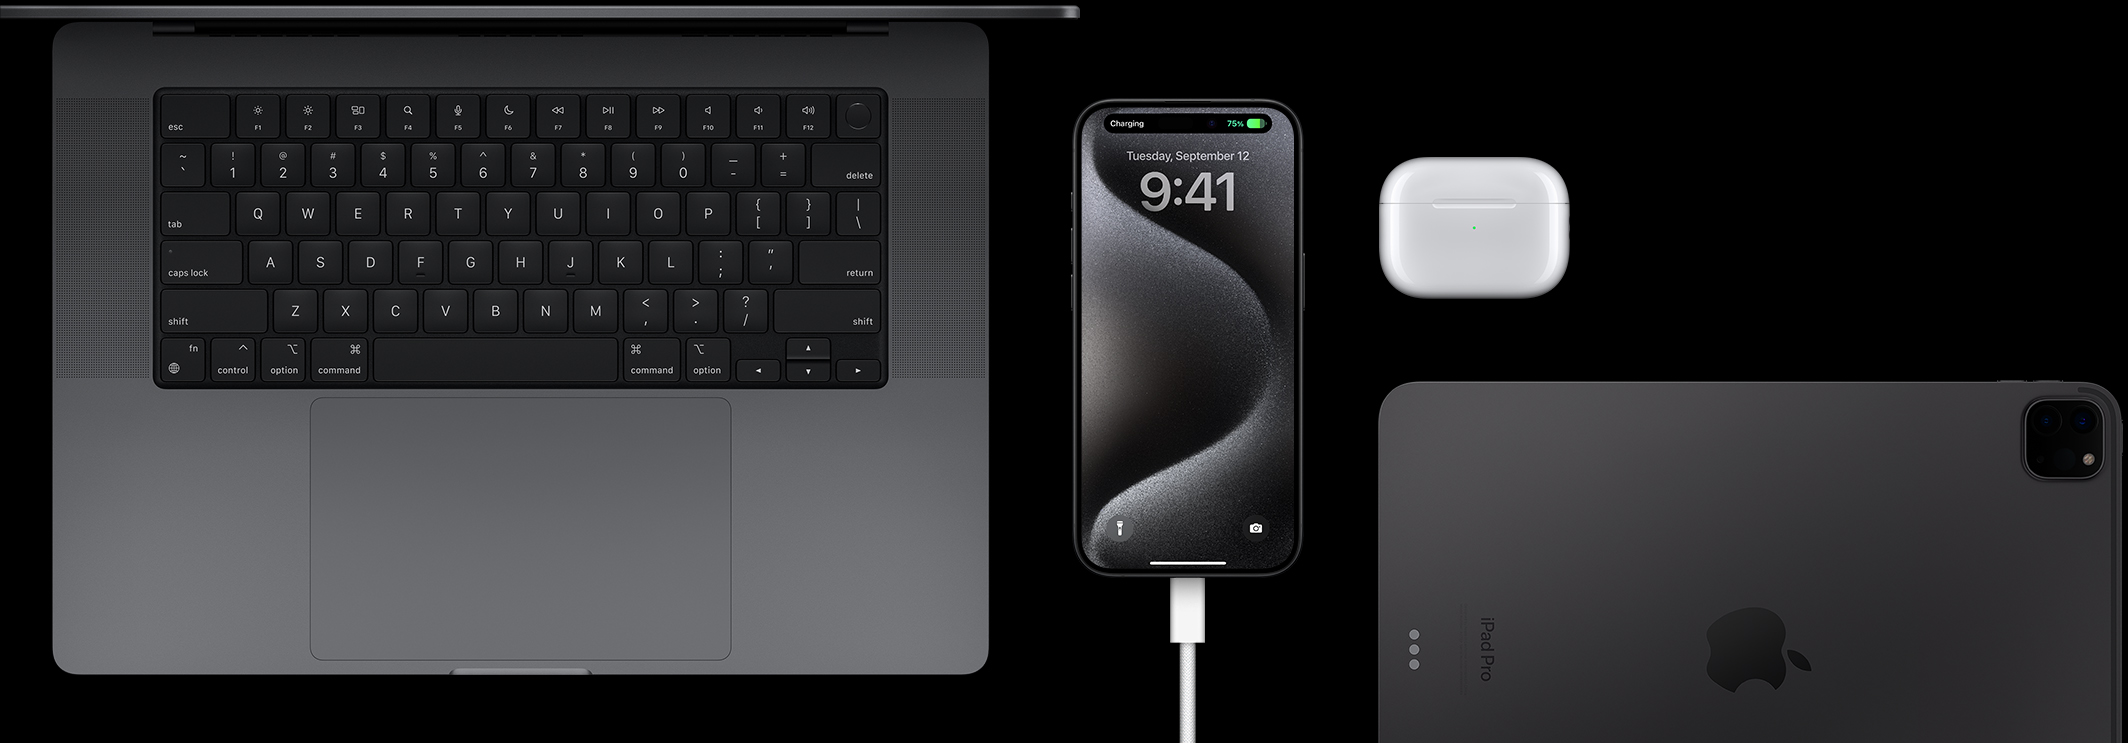 iPhone 15 Pro med en usb-c-kabel ansluten och omgiven av en MacBook Pro, AirPods Pro och en iPad